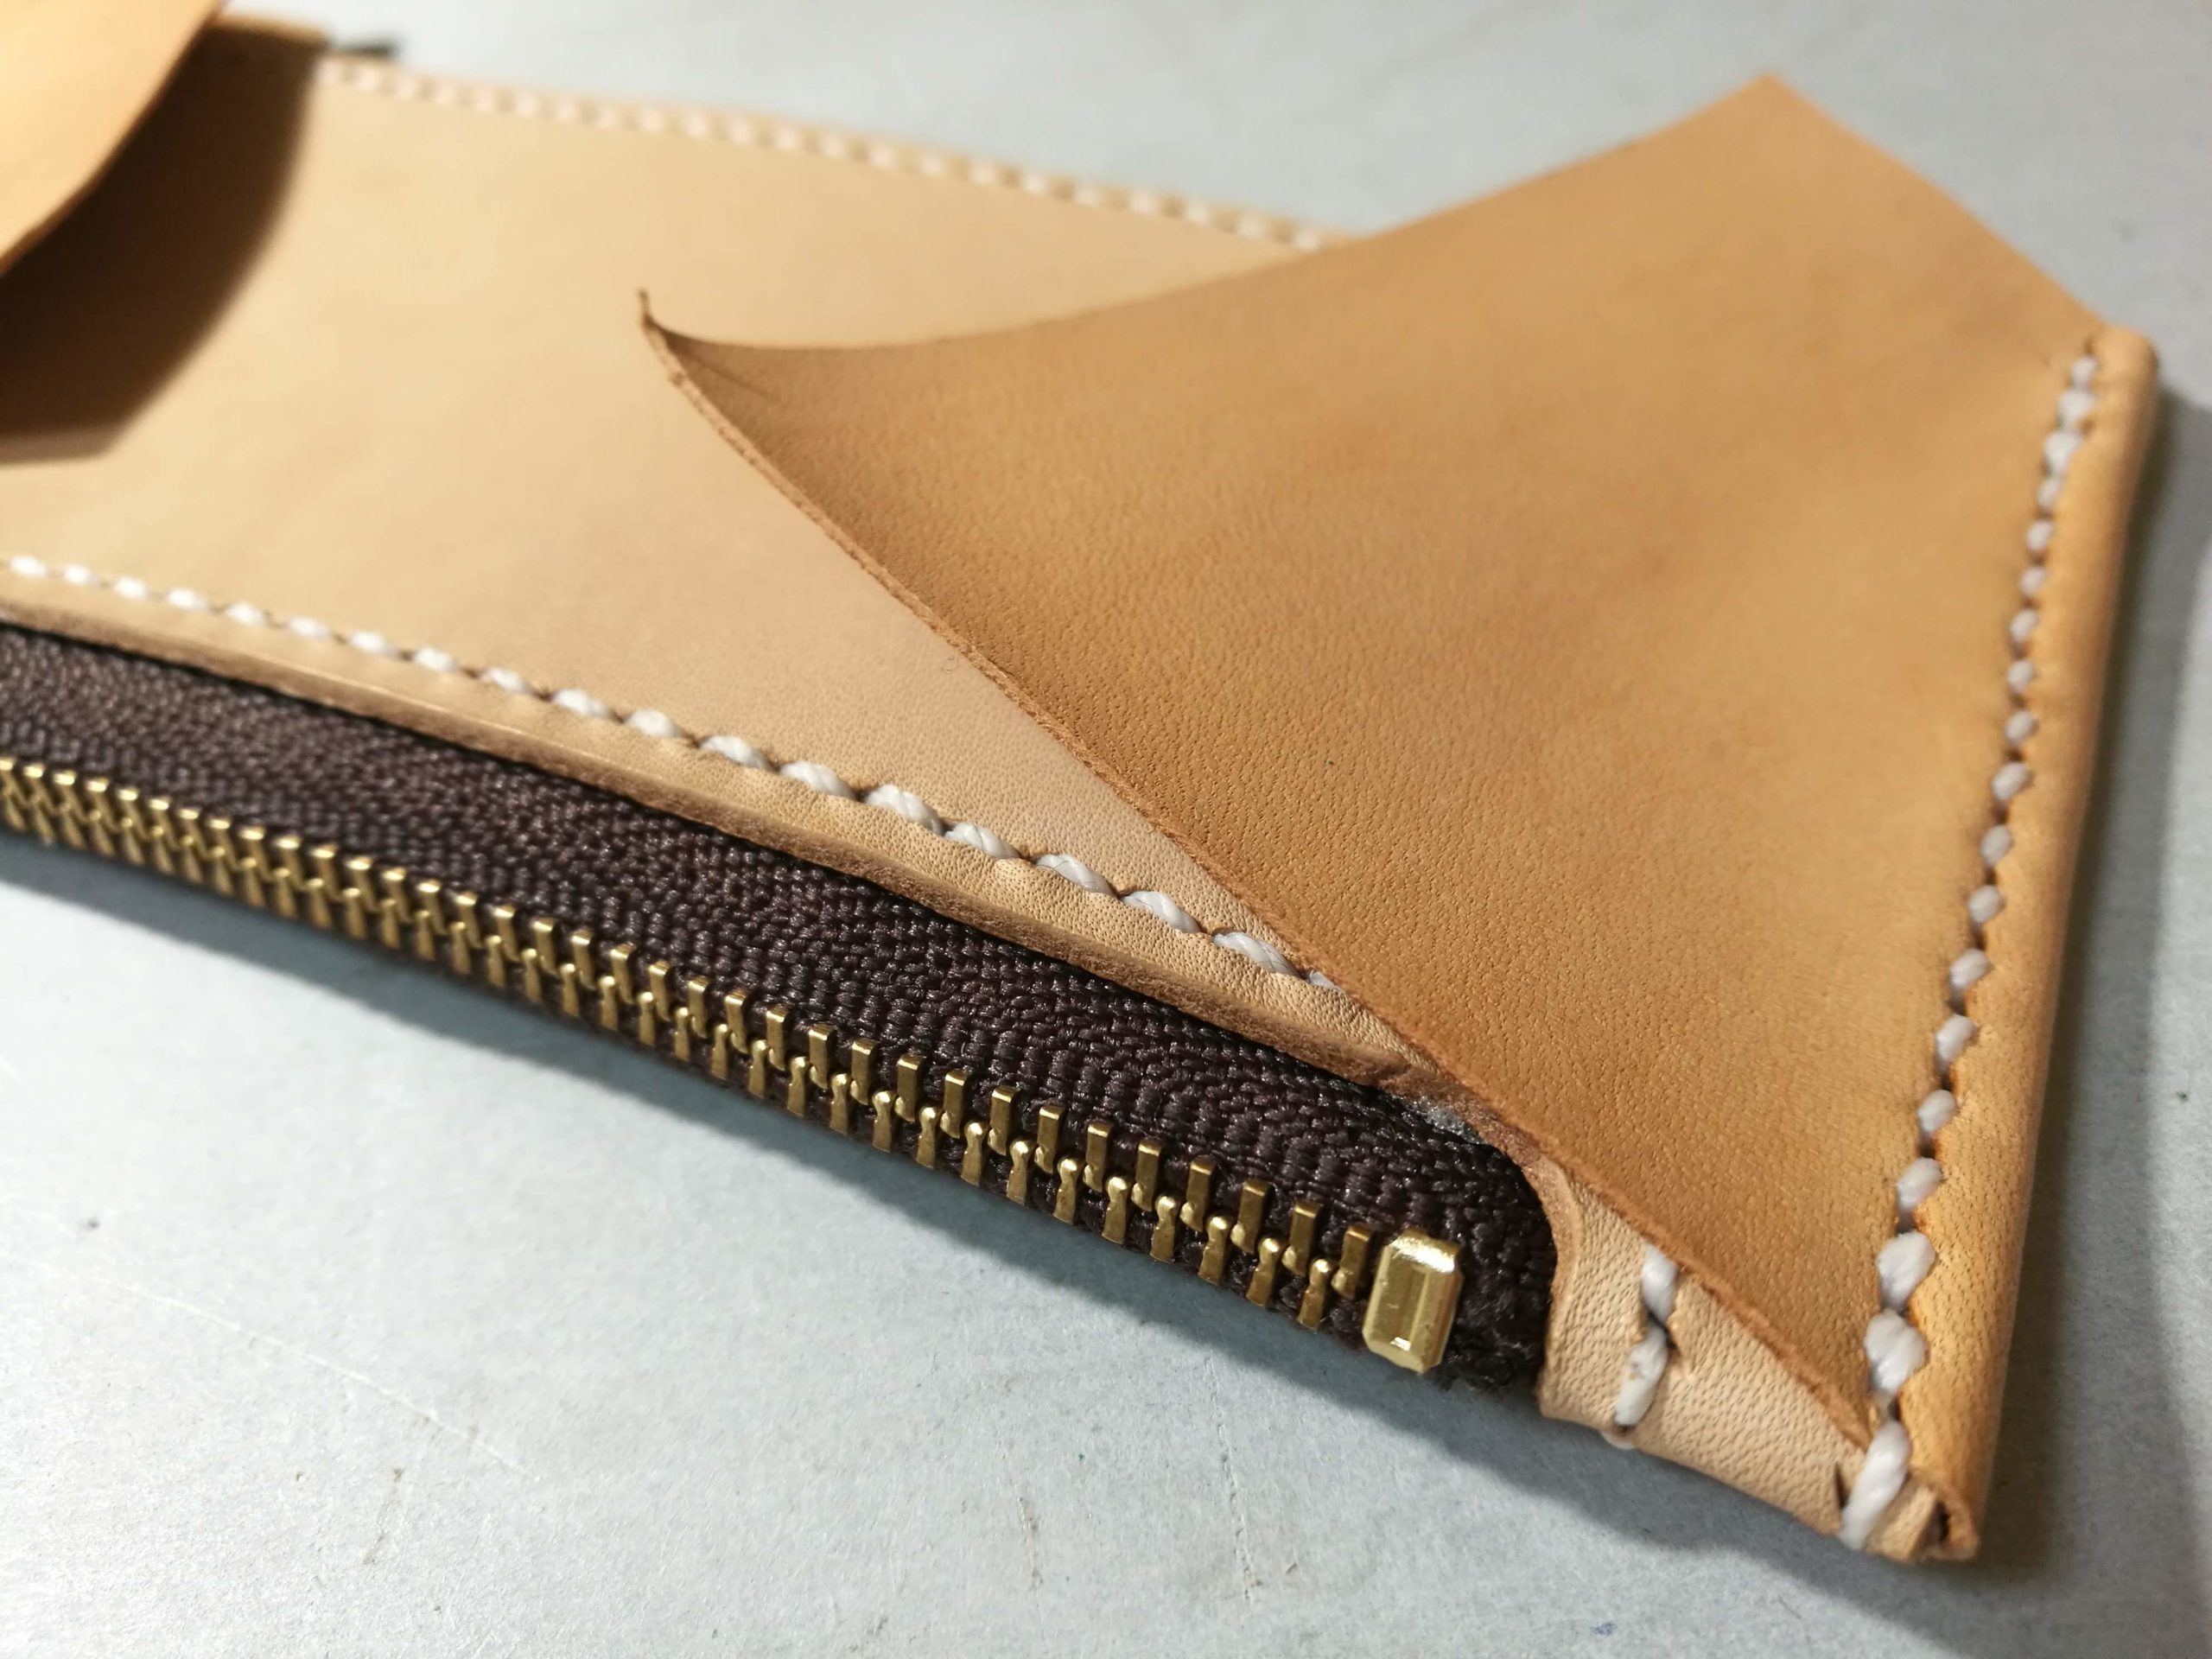 レザークラフトでラウンドファスナー型長財布を作る 2 4 内装の作成